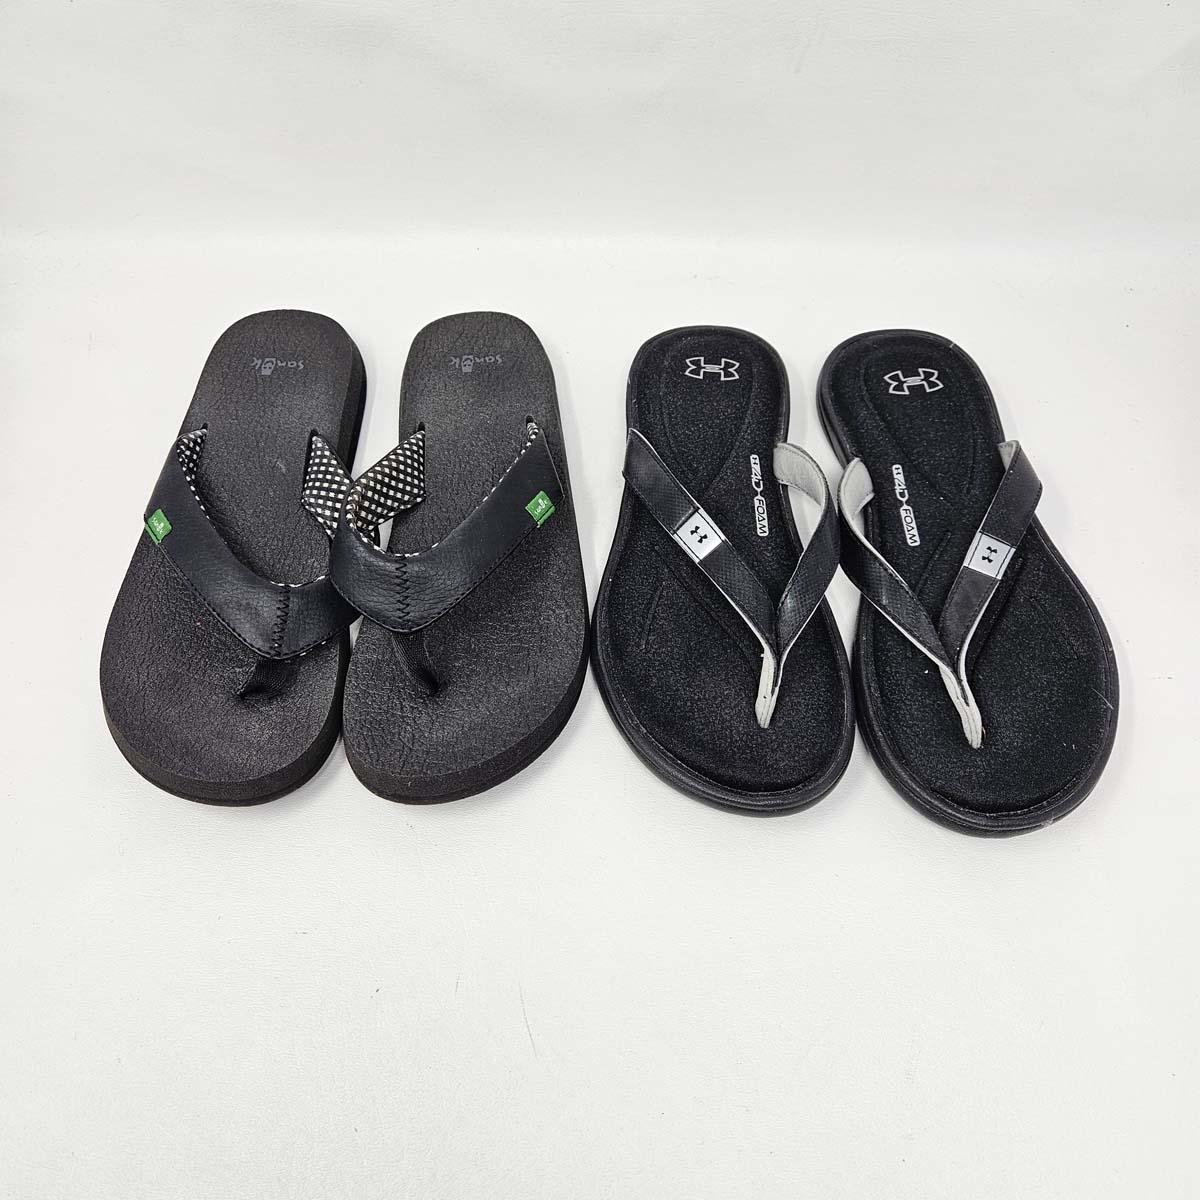 Under Armour & Sanuk Black Flip Flop Thong Shoes - 2 Pairs - Women's Size 6